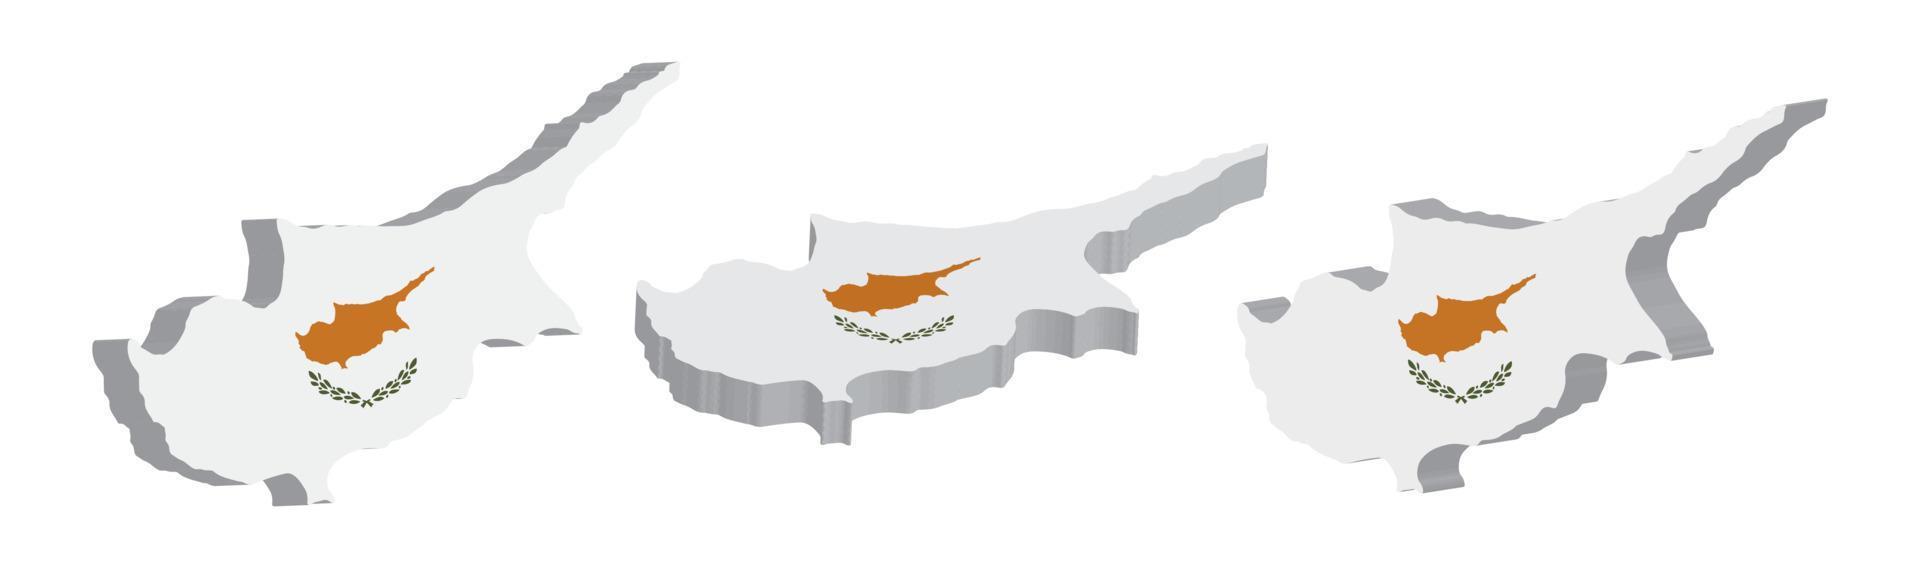 realistisch 3d kaart van Cyprus vector ontwerp sjabloon